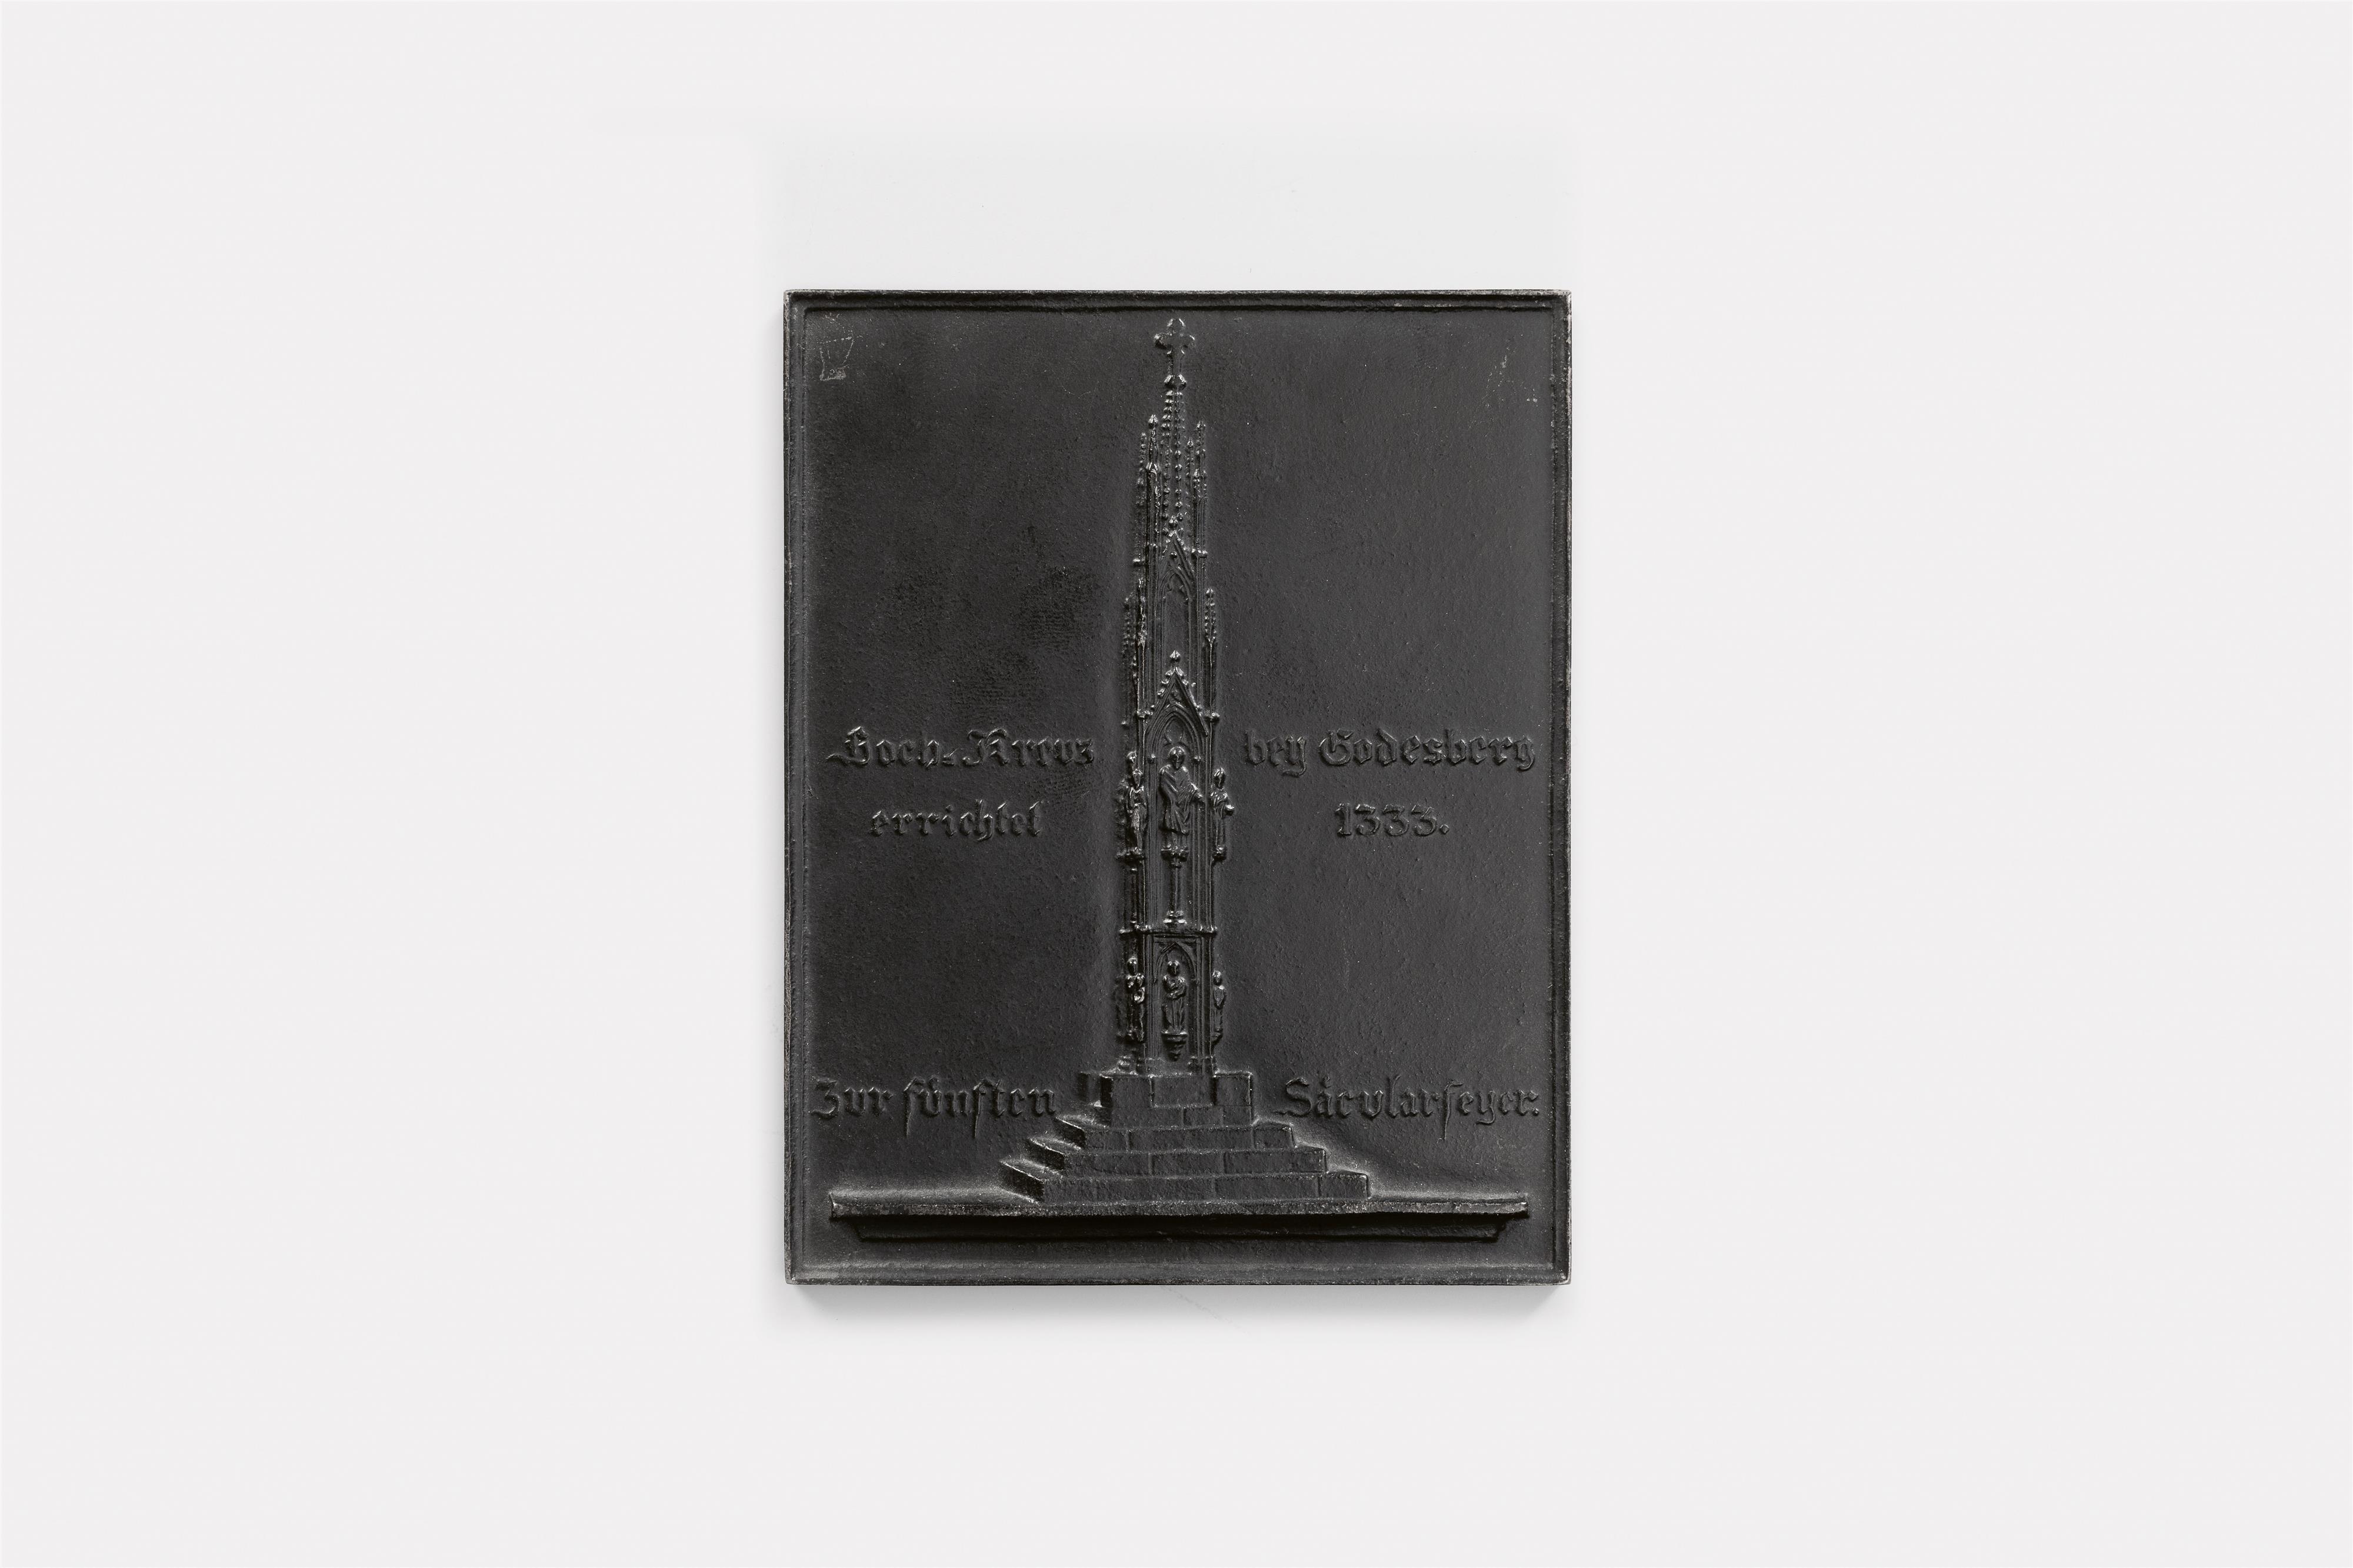 A cast iron New Year's plaque inscribed "Hoch=Kreuz bey Godesberg errichtet 1333 Zur fünften Säcularfeyer." - image-1